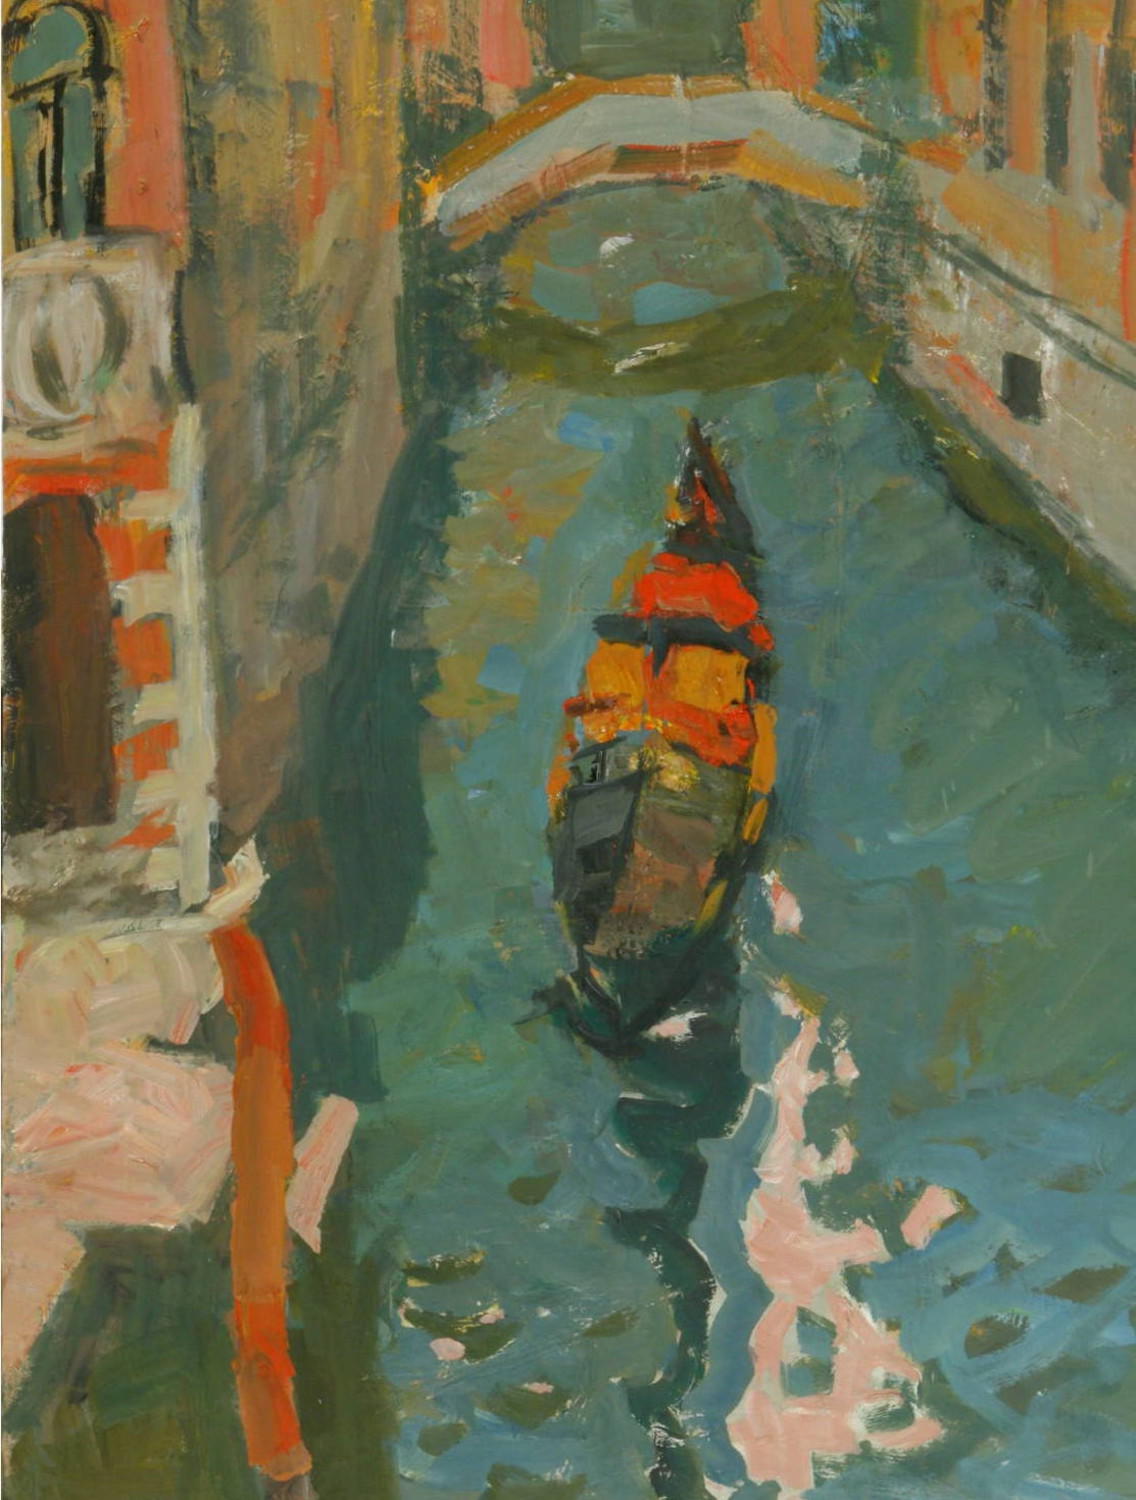 Венеция (Обновленная коллекция). Амир Тимергалеев. 2009, холст, масло, 60x80